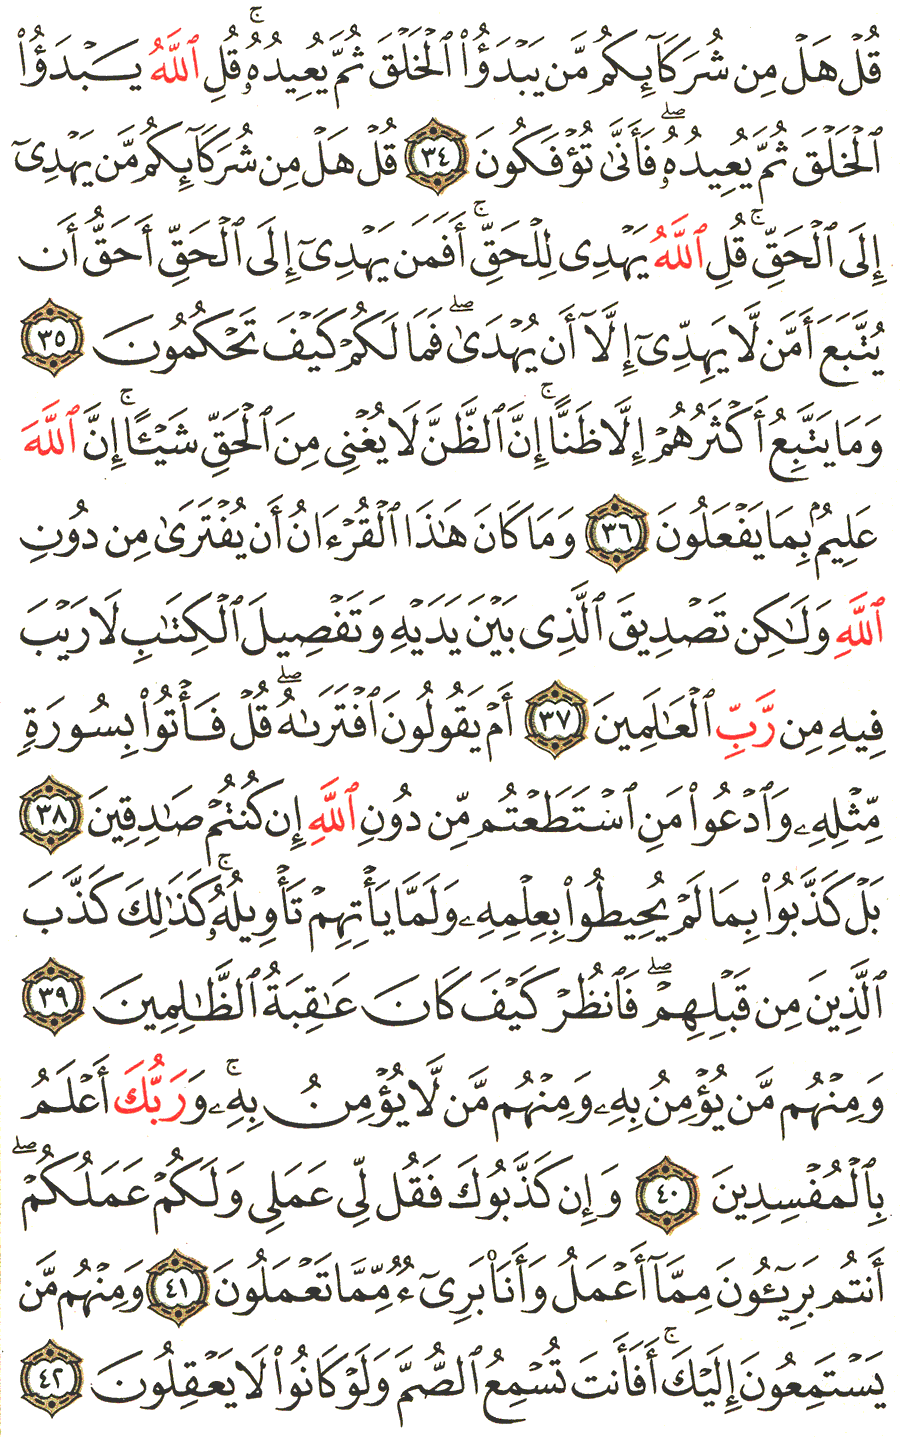 الصفحة 213 من القرآن الكريم